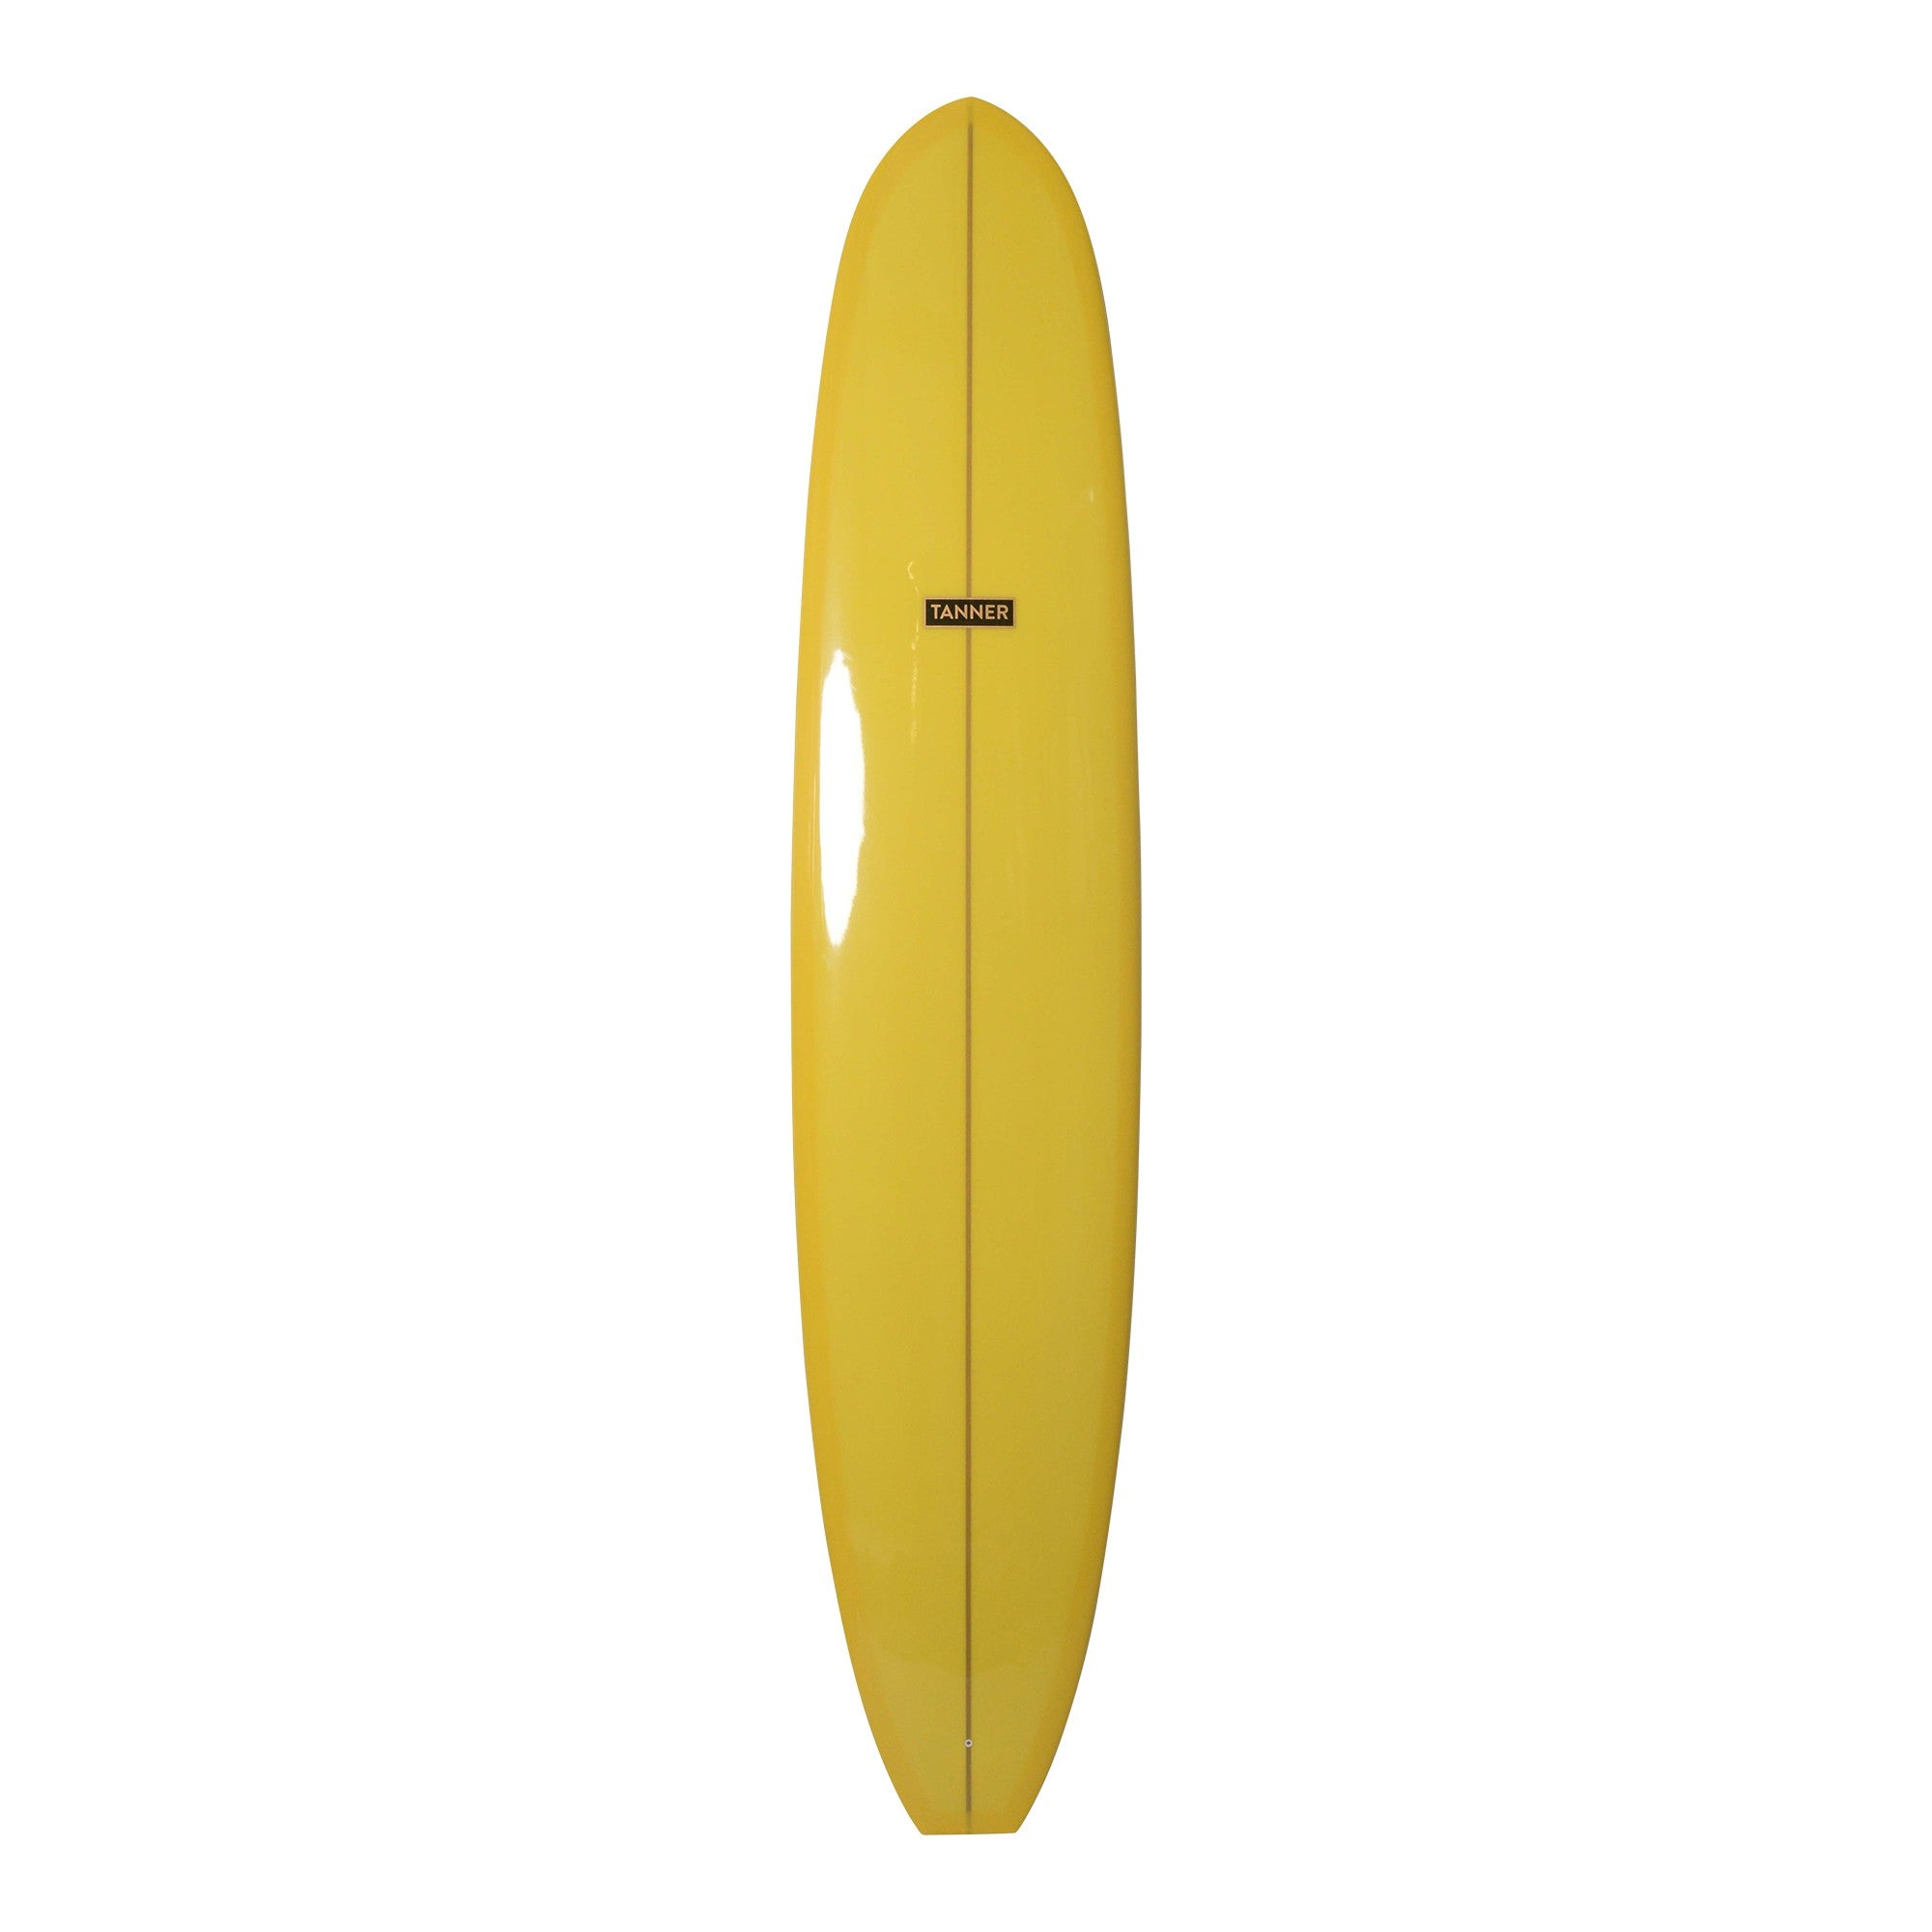 TANNER SURFBOARDS - Tradesman Longboard - 9'6 (PU) - Yellow